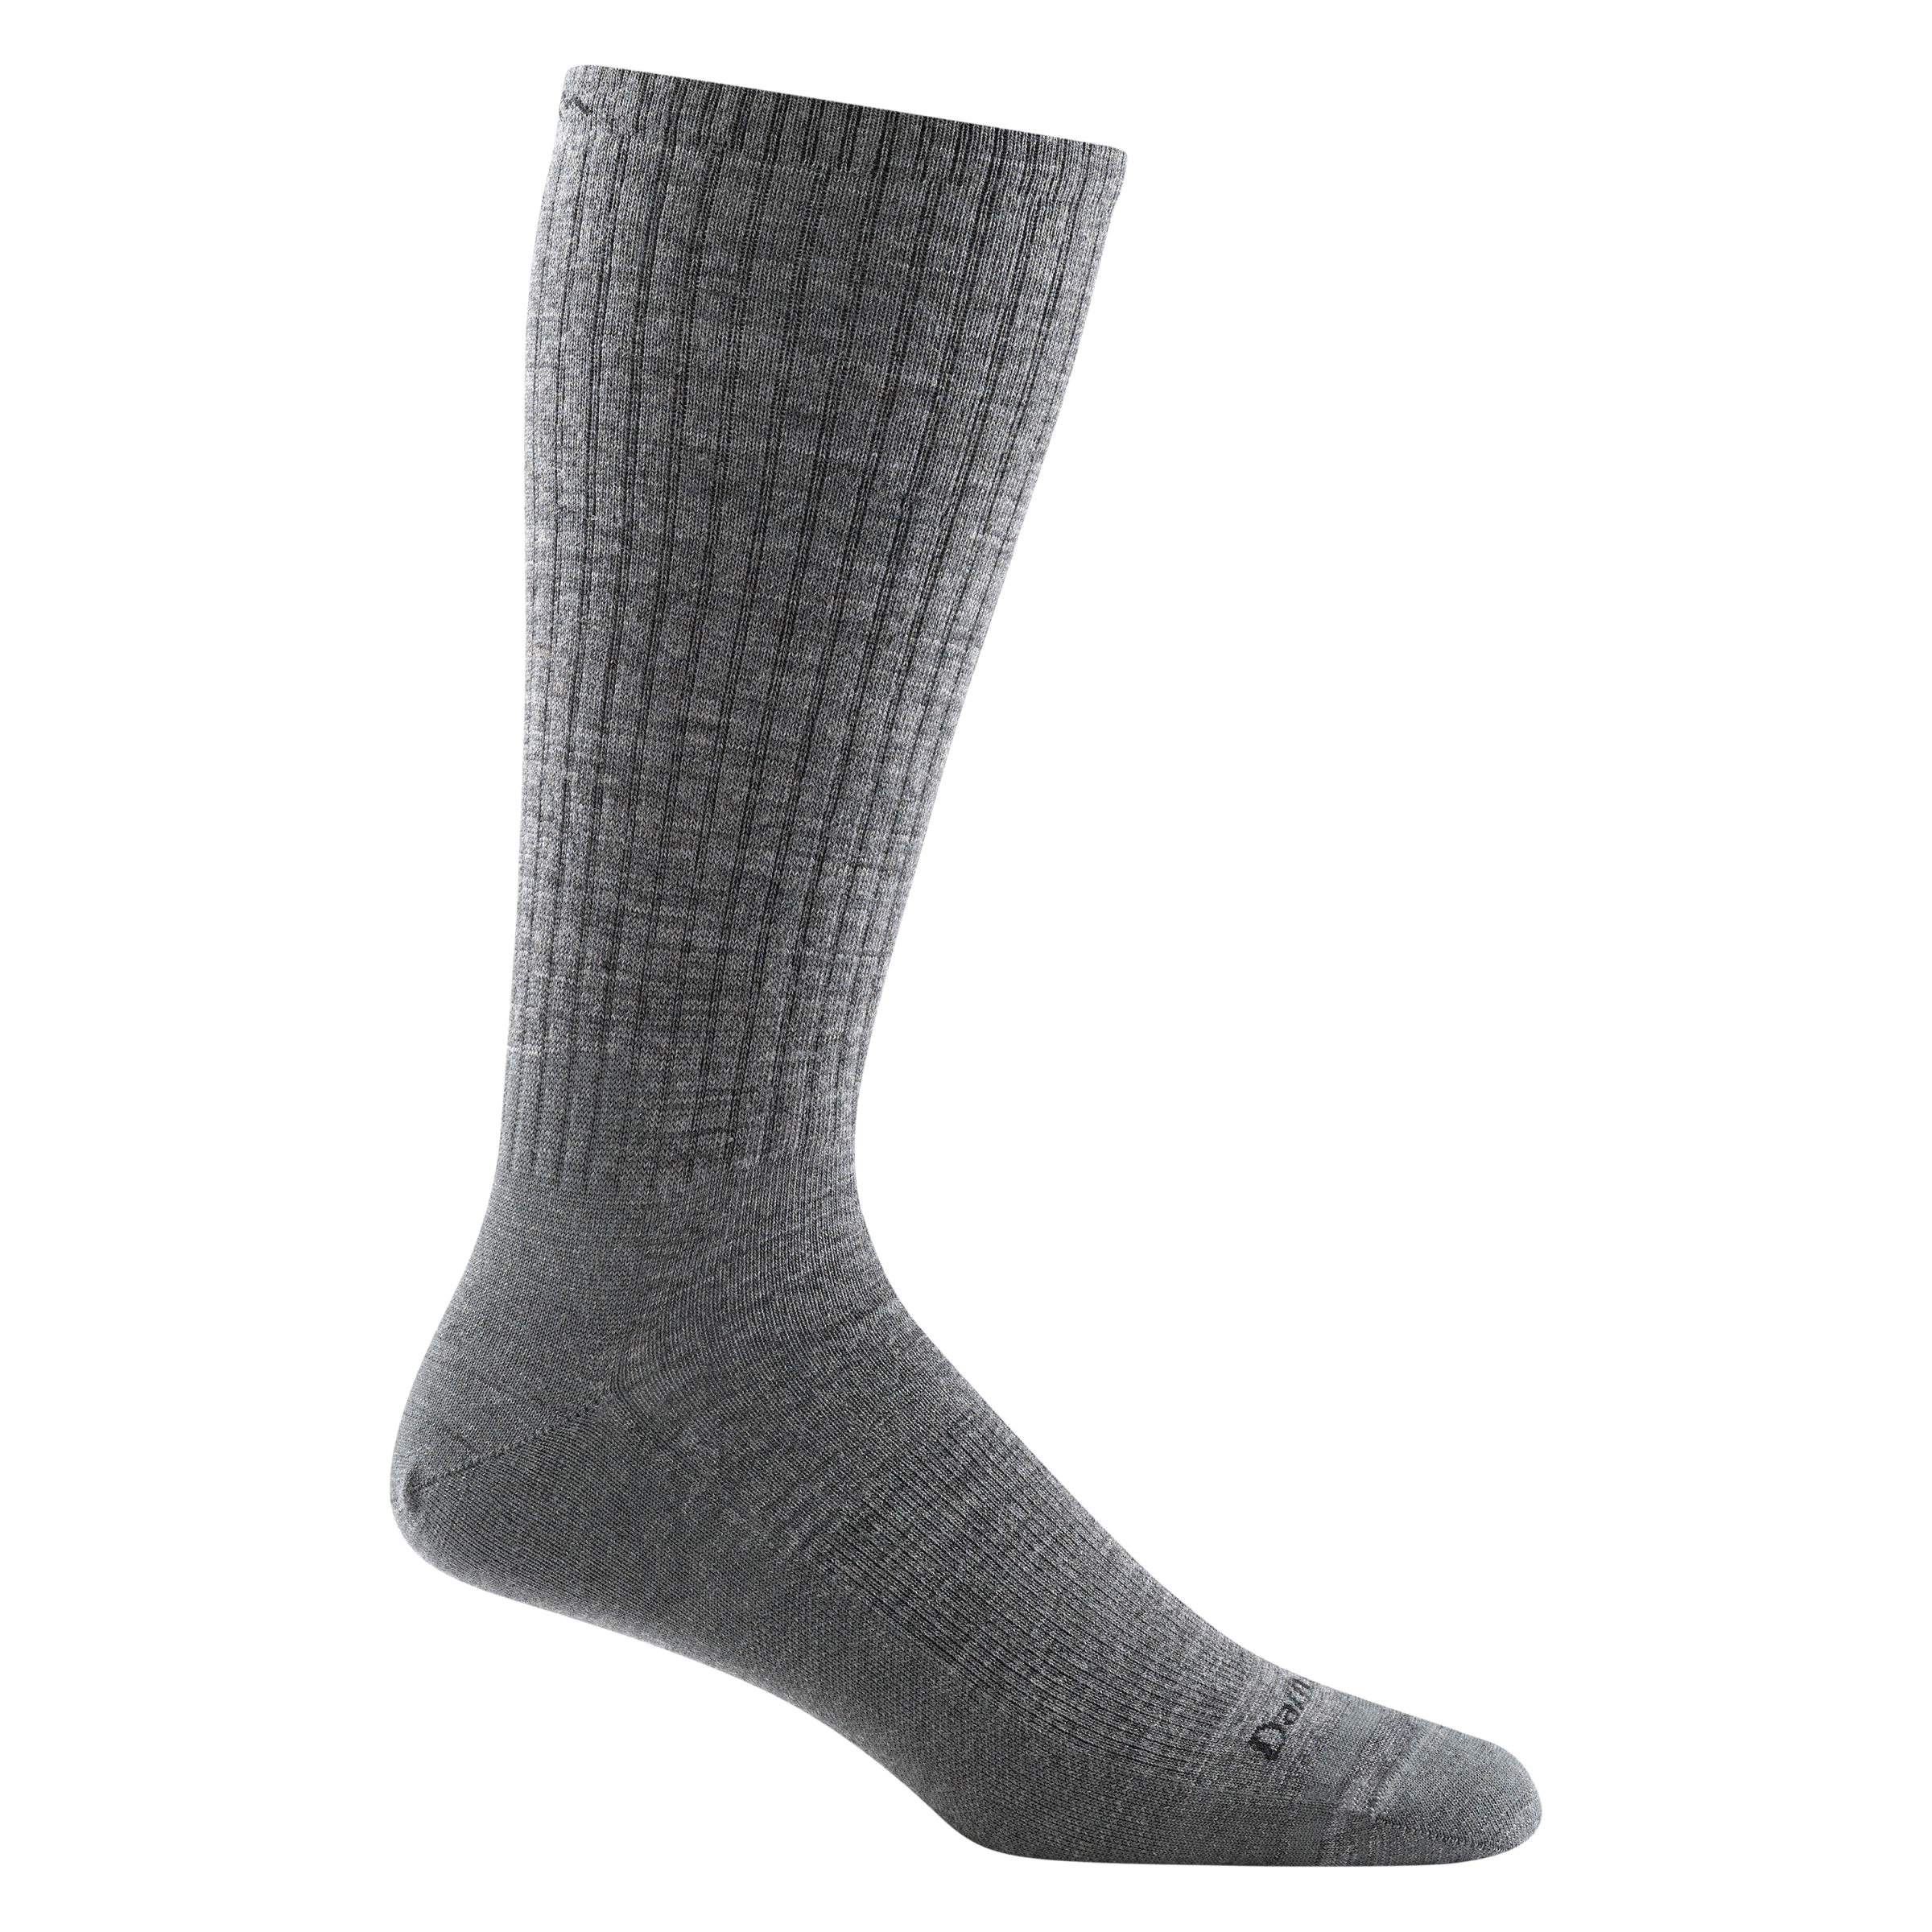 Socks unisex Medium black